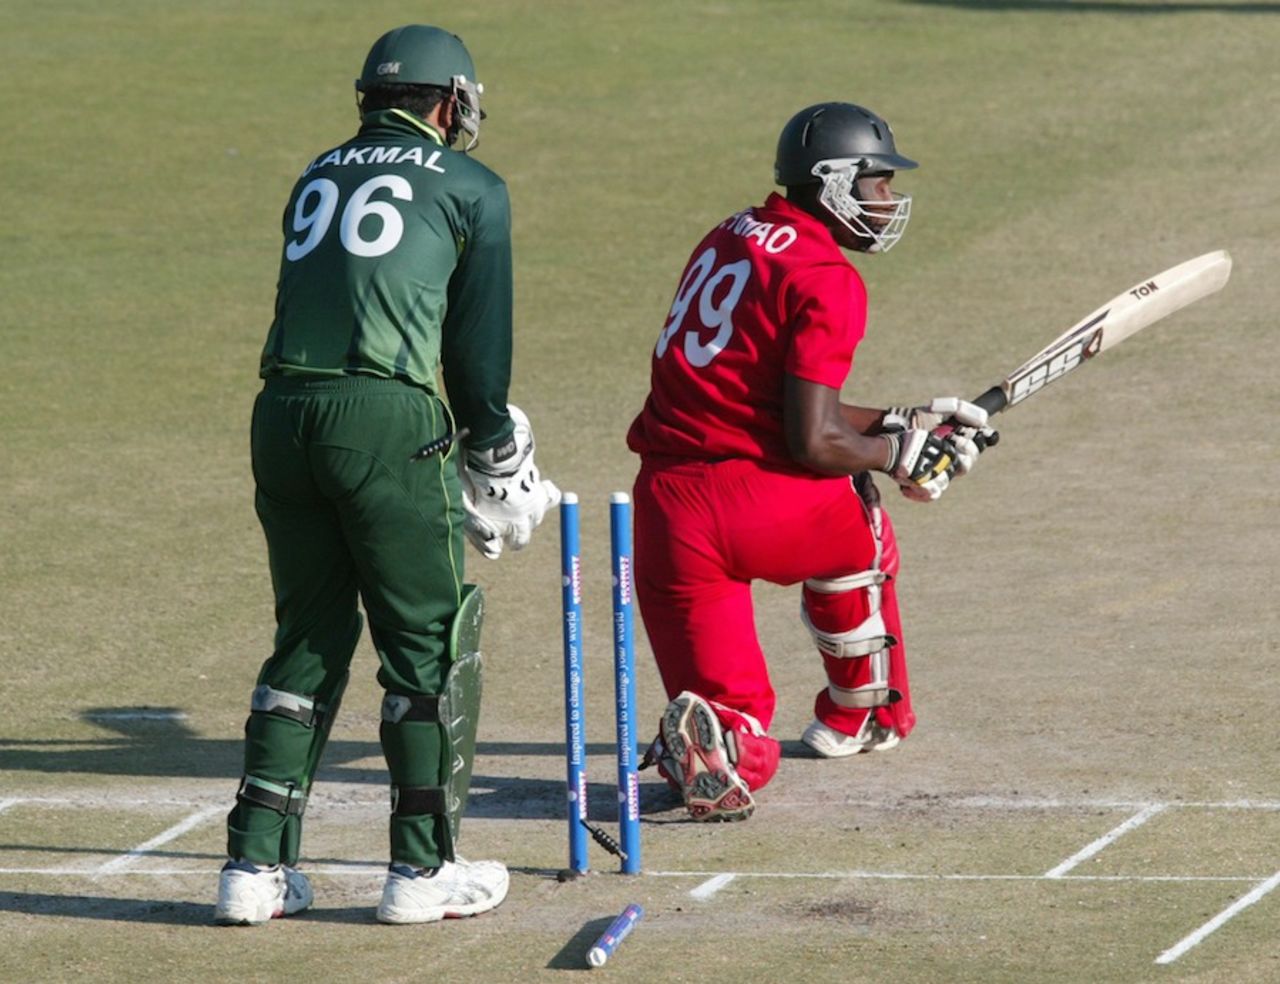 Cephas Zhuwao was bowled by Mohammad Hafeez, Zimbabwe v Pakistan, 2nd Twenty20, Harare, September 18, 2011